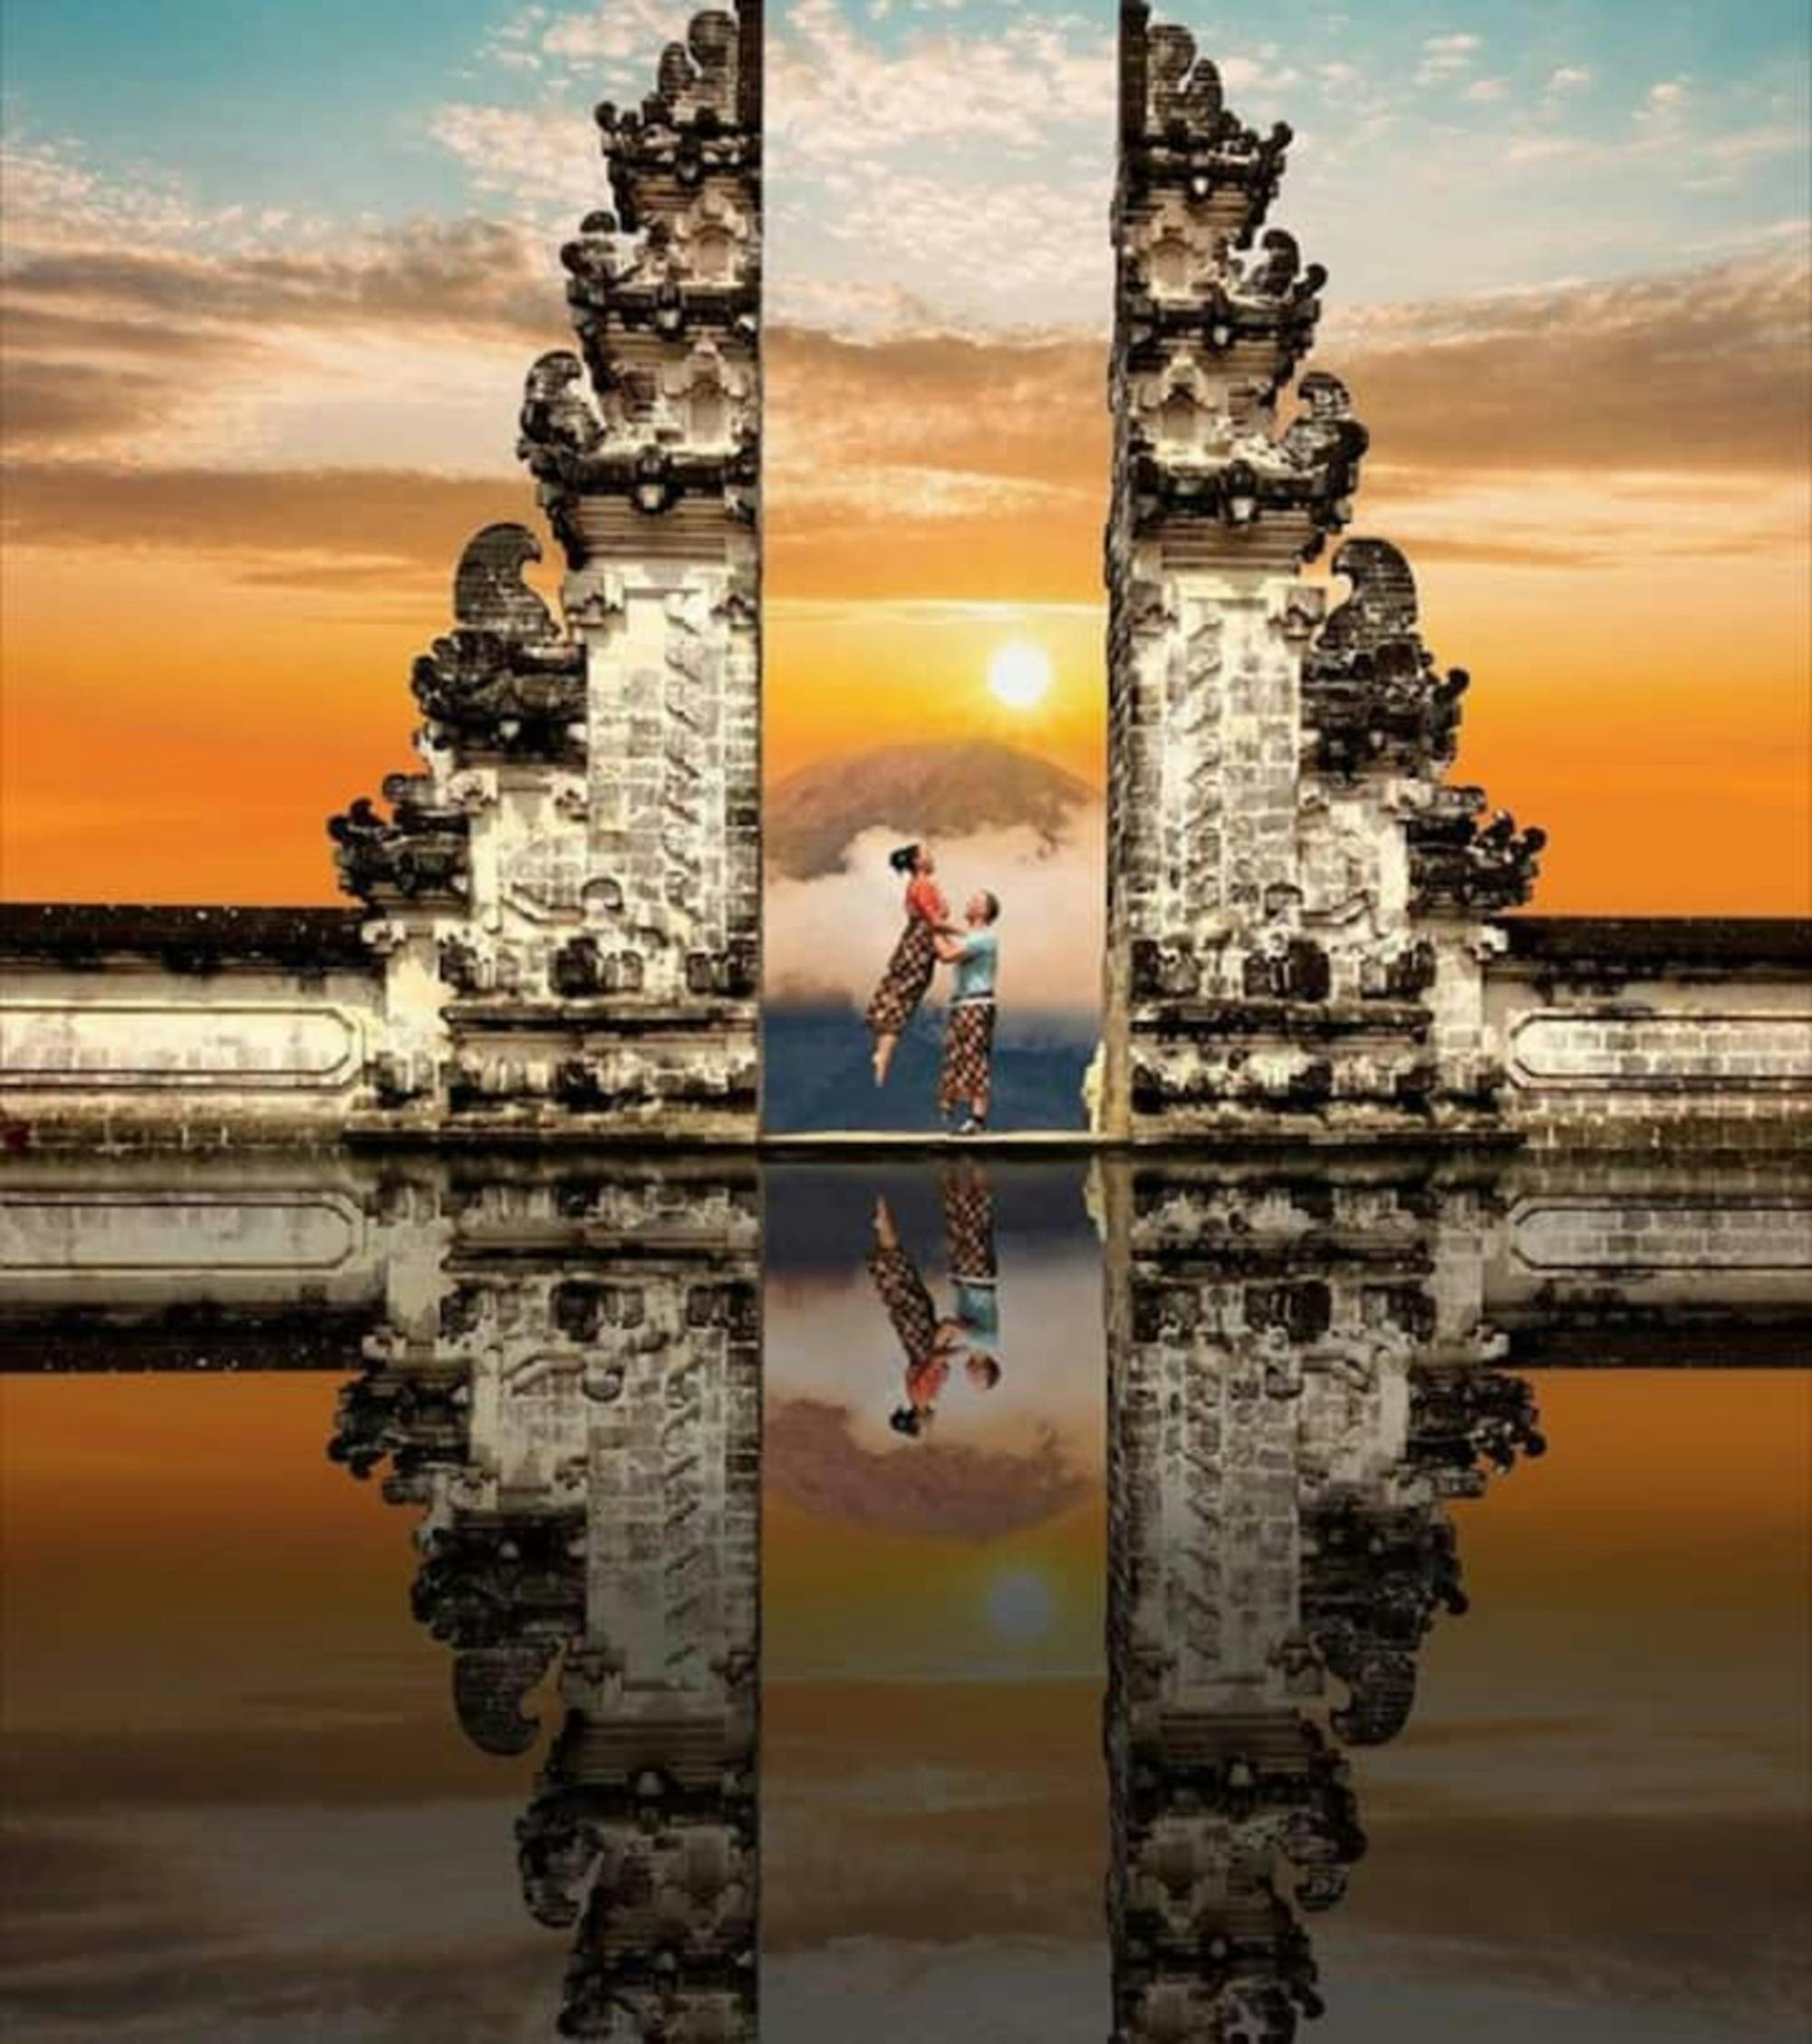 Lo más destacado de Ubud y la visita privada de 1 día a la Puerta del Cielo